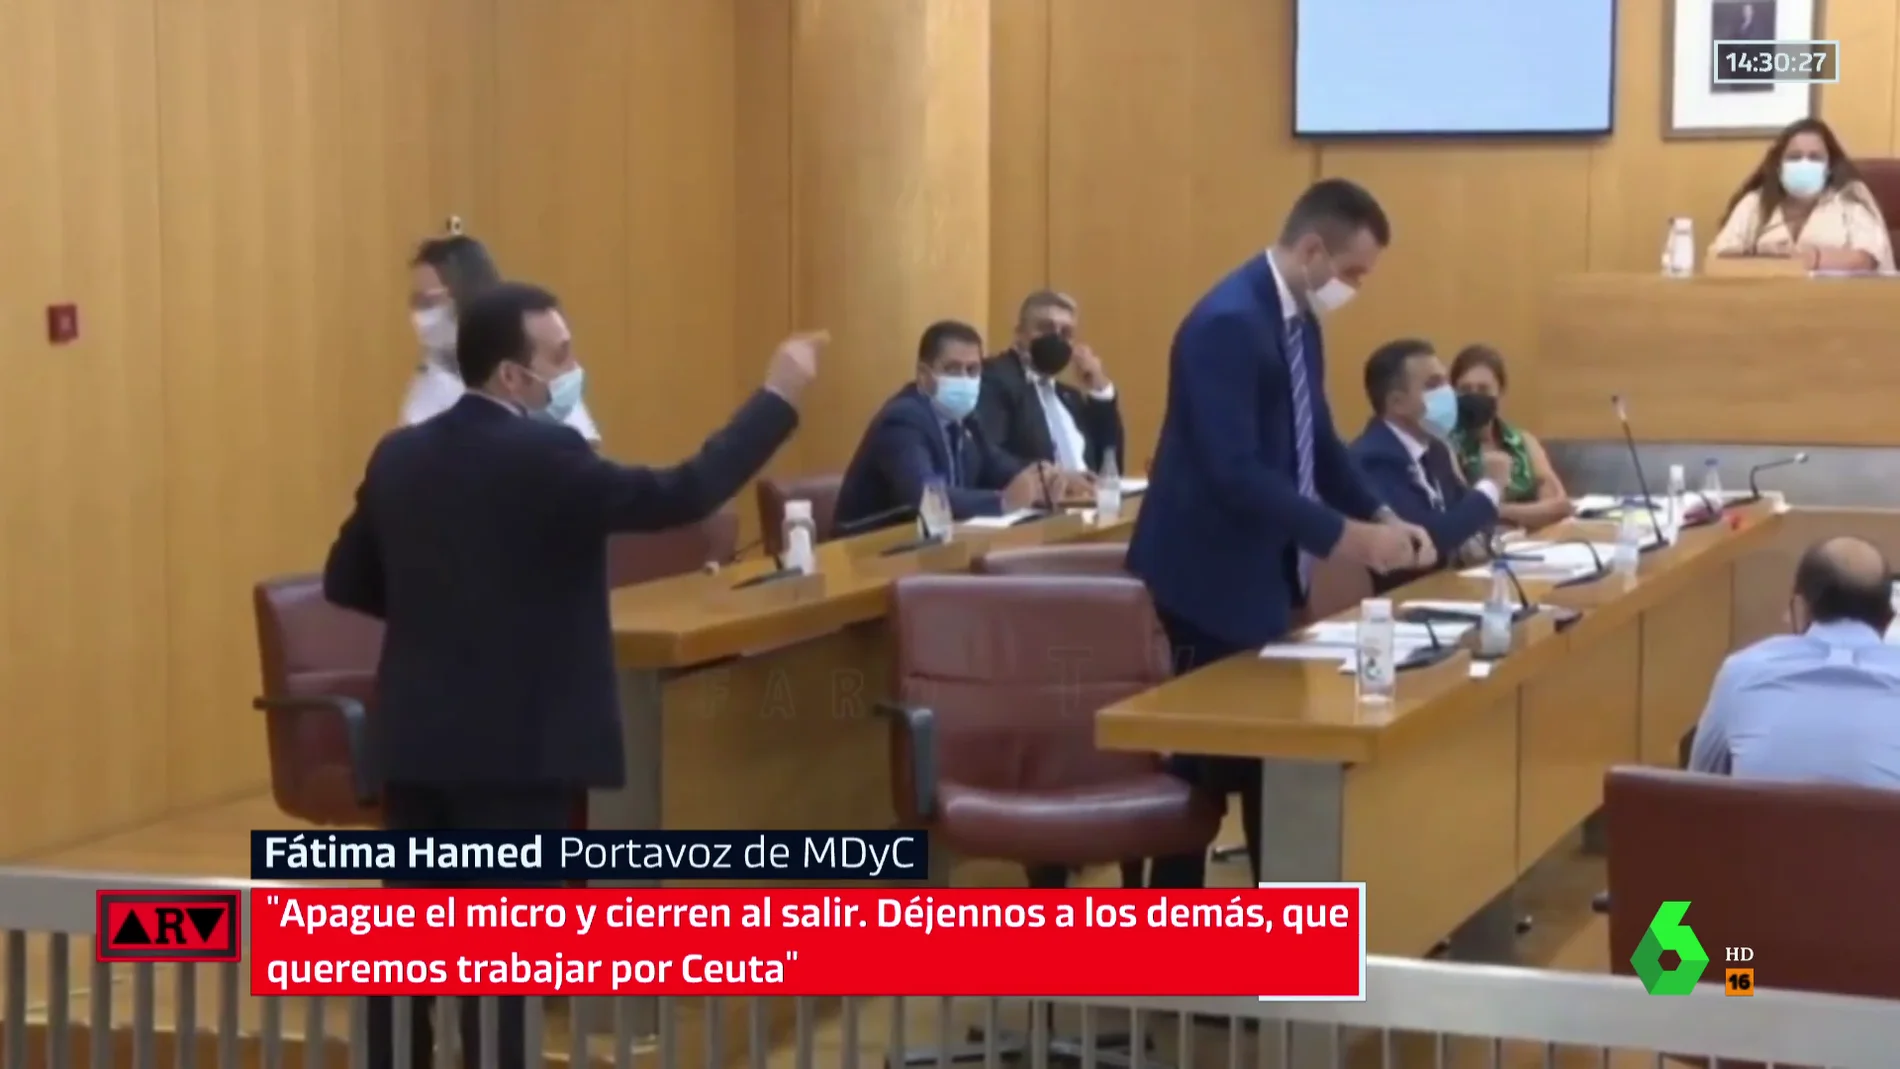 Los diputados de Vox en Ceuta abandonan el pleno después de que Vivas les dijera que "no consideran españoles a los musulmanes"